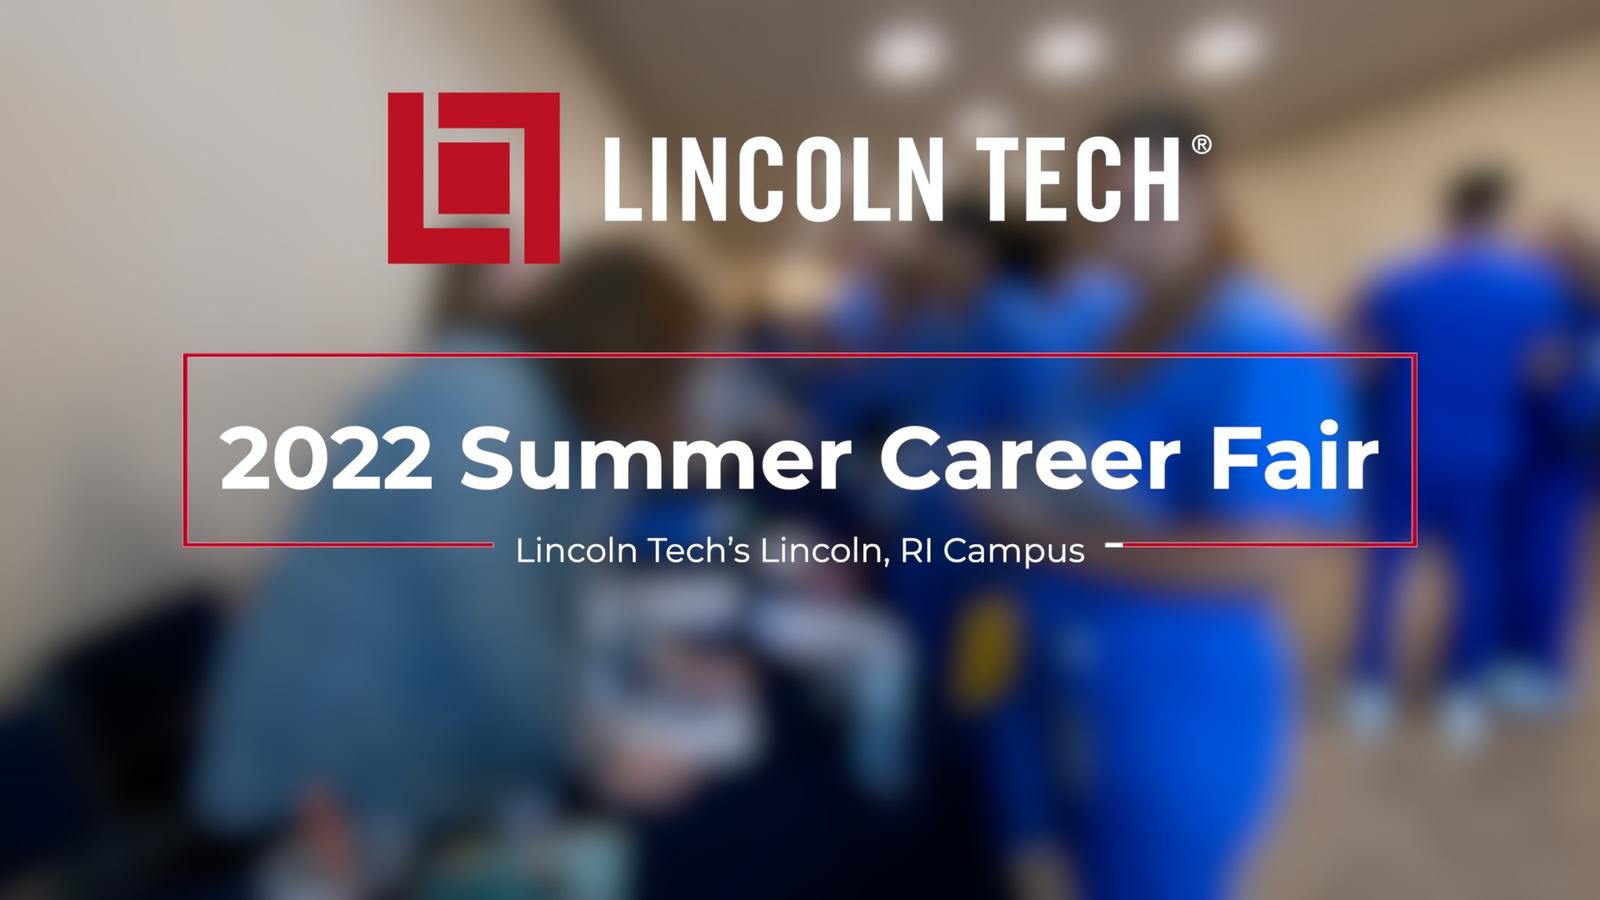 Lincoln Tech Career Fair Summer 2022 in Lincoln RI